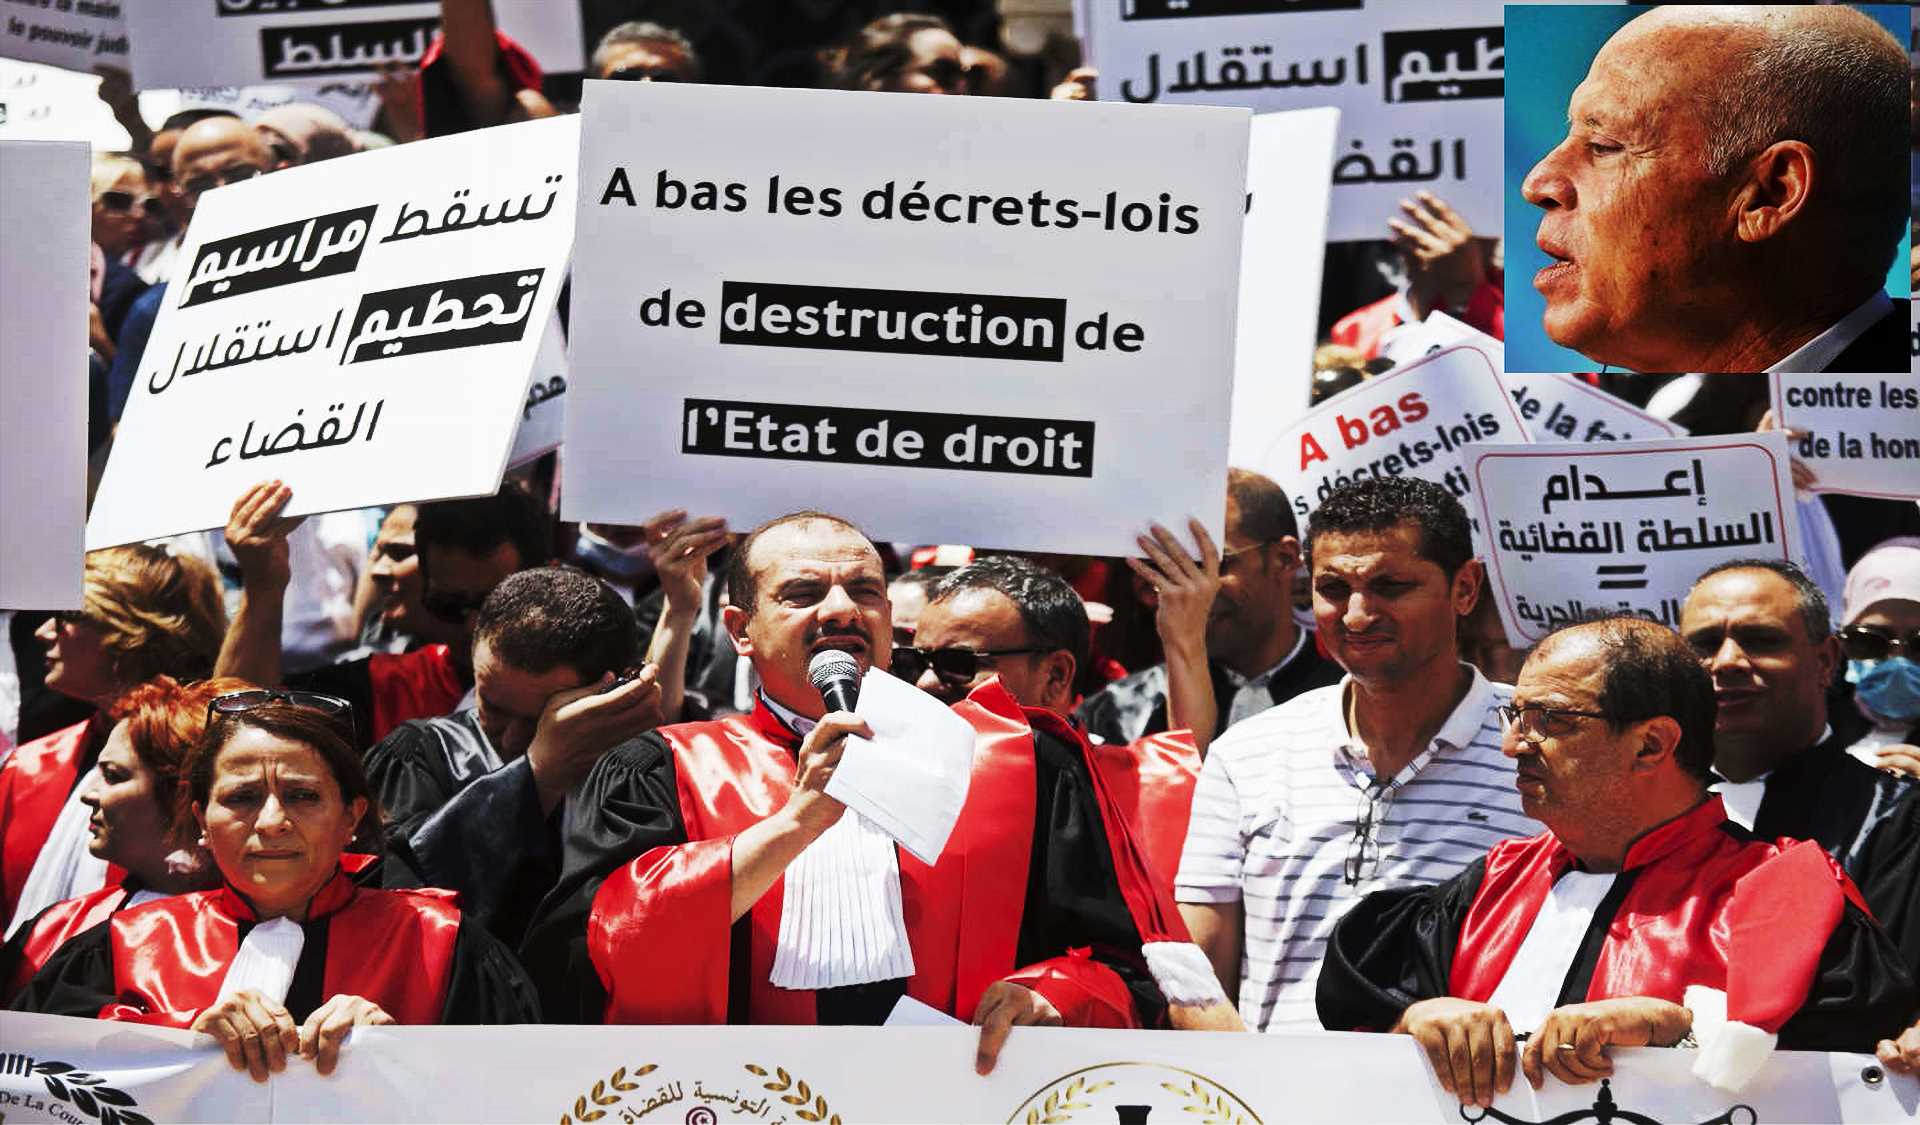 على هامش بيان جمعية القضاة : هل للسلطة السياسية مسؤولية في انتشار خطاب هتك الأعراض في تونس ؟